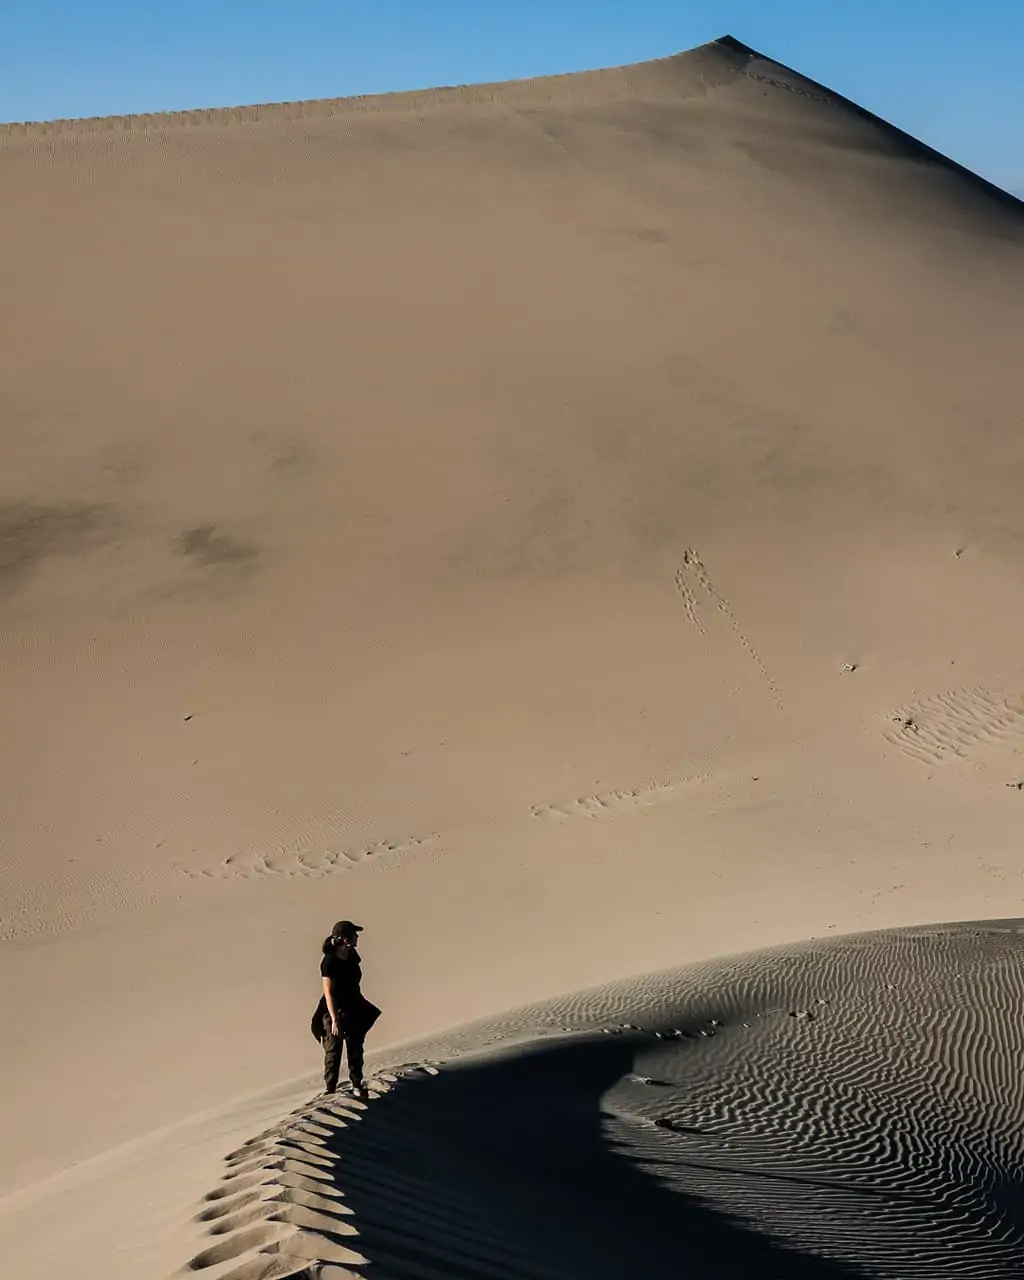 Sand dunes outside of Huacachina, Peru